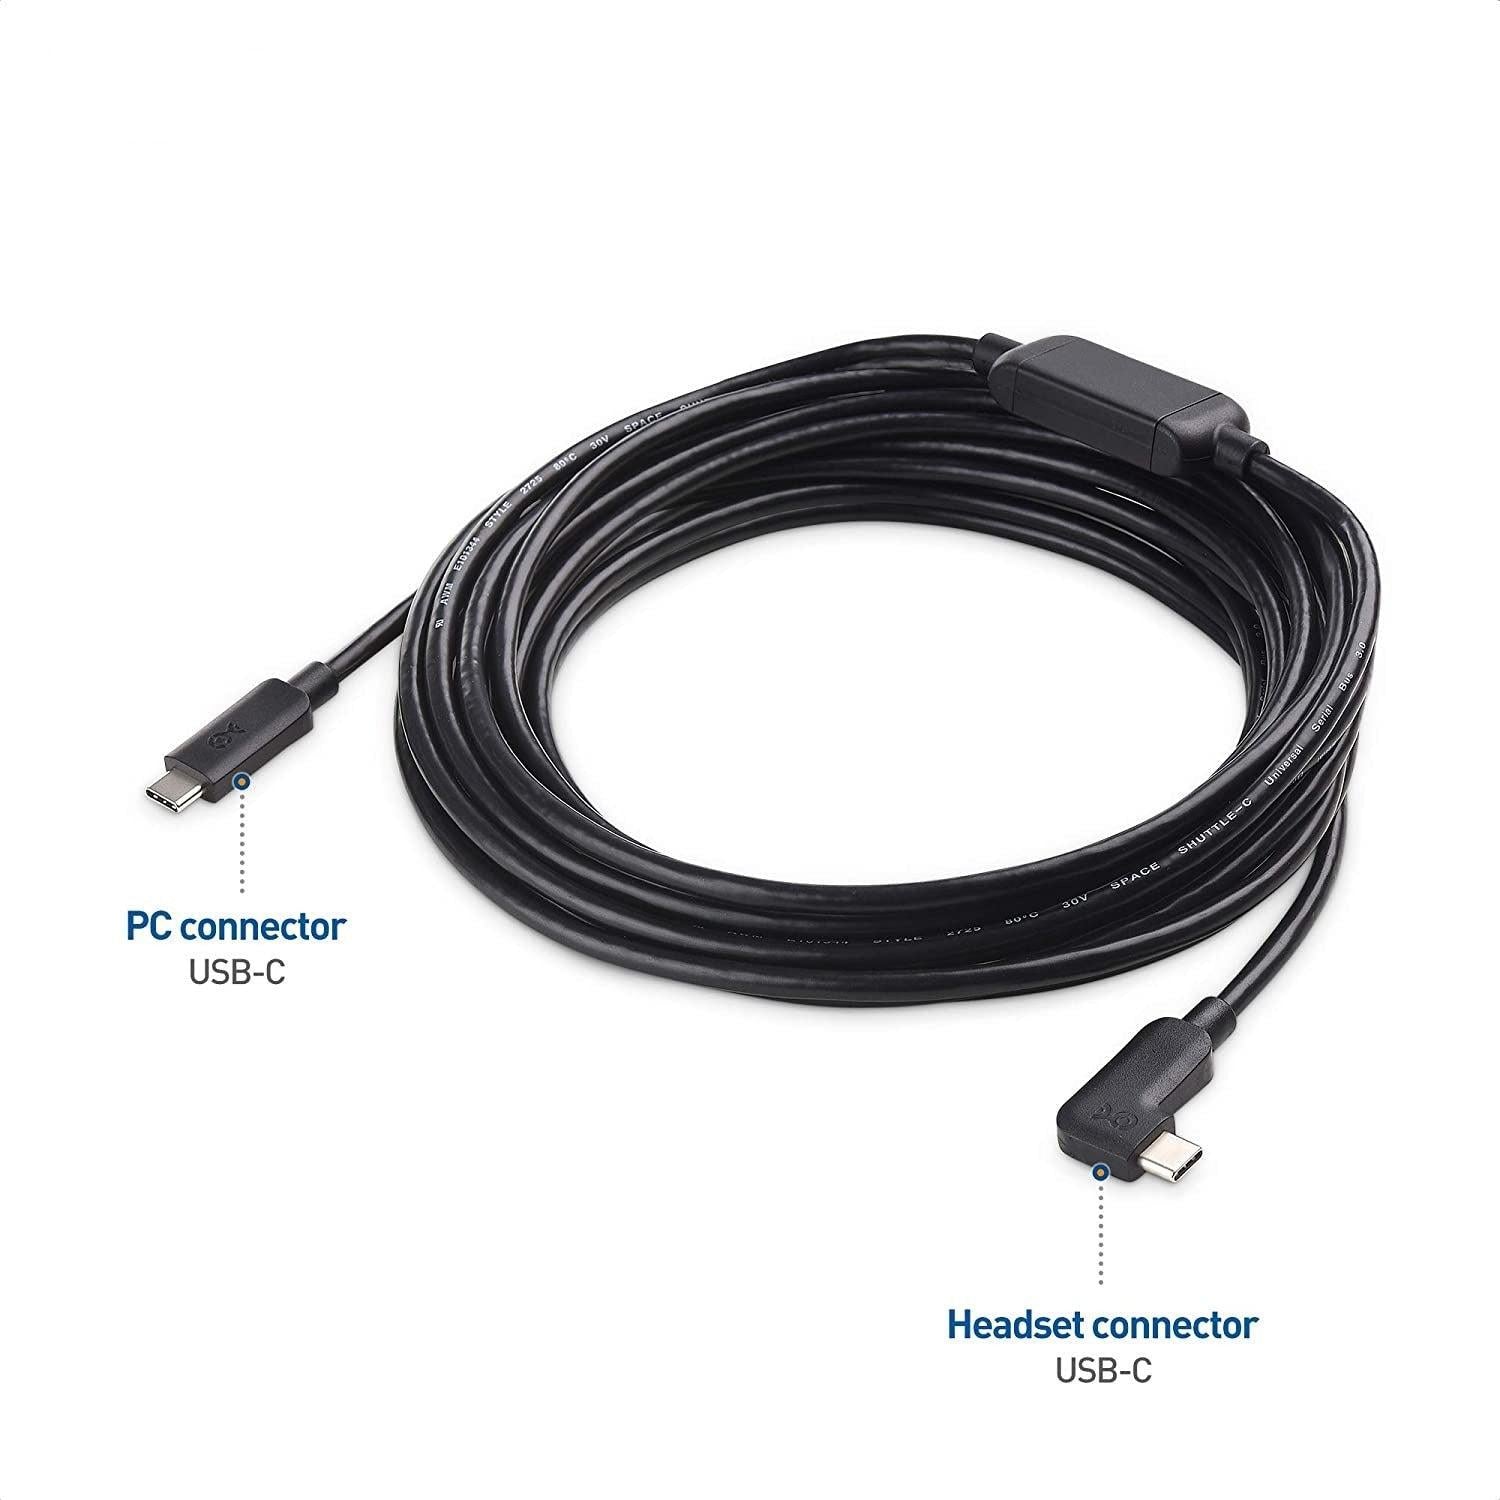 Cable Matters aktiv 7,5 m USB-C til USB-C VR Link-kabel for Oculus Quest 2 USB3.2 Gen1 5 Gbps 3A Super Speed VR Link-kabel